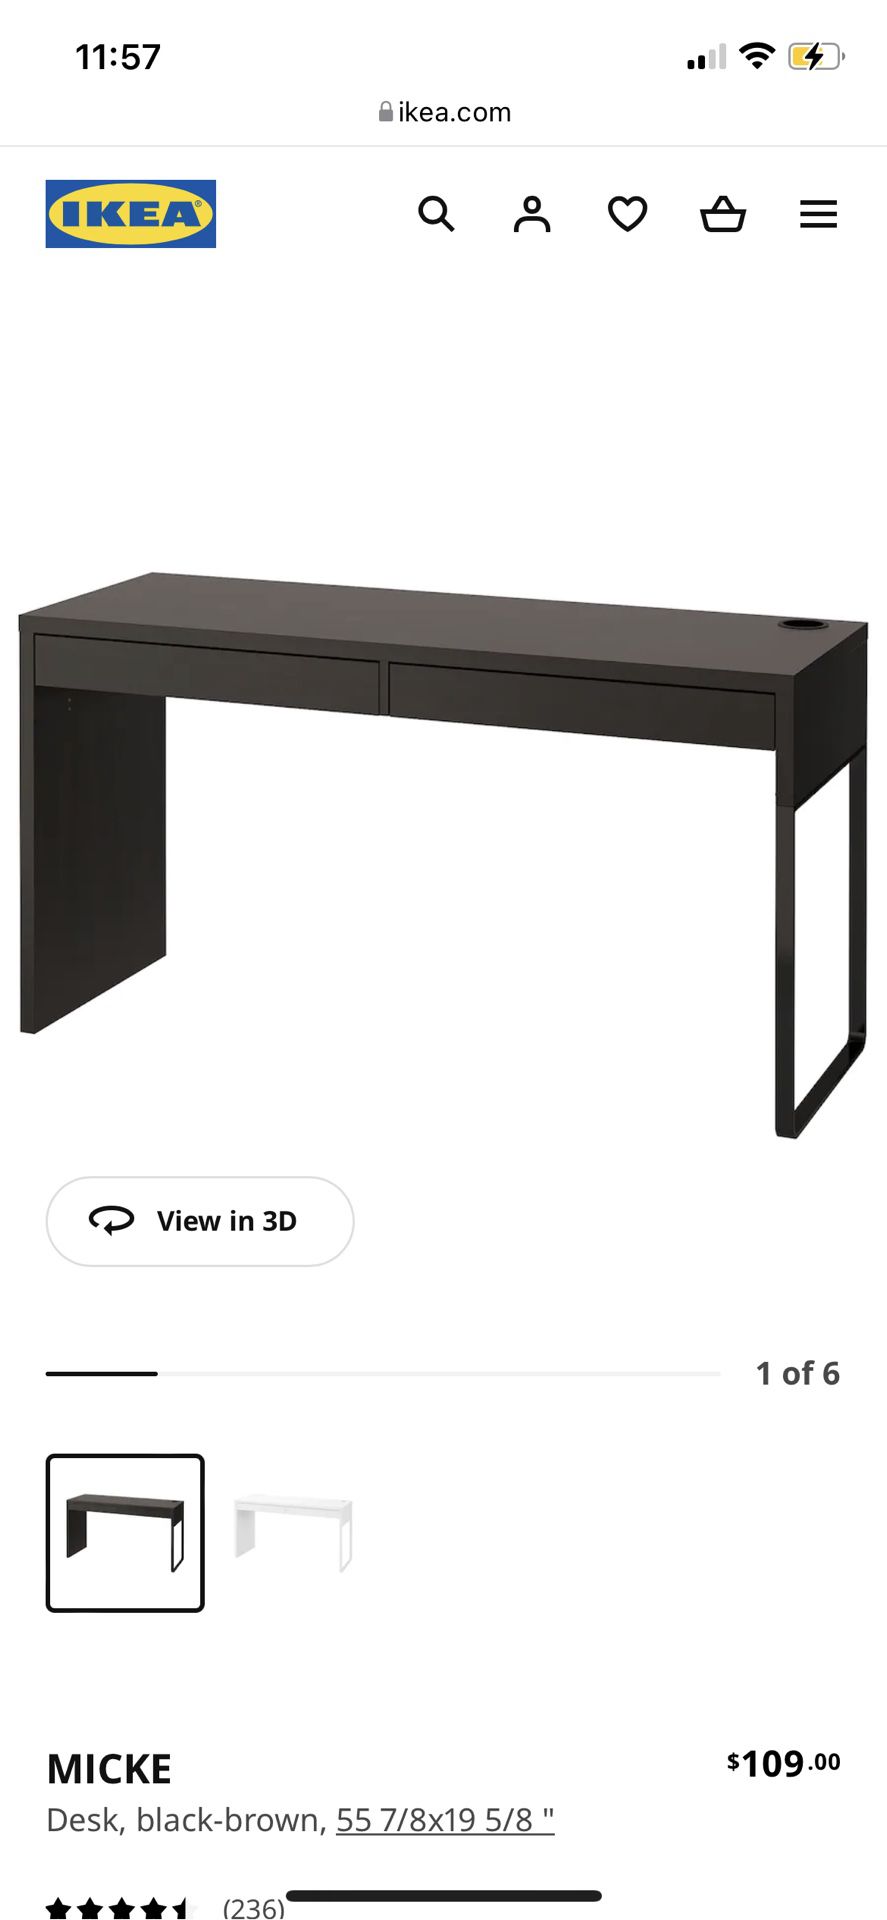 BRAND NEW IKEA DESK